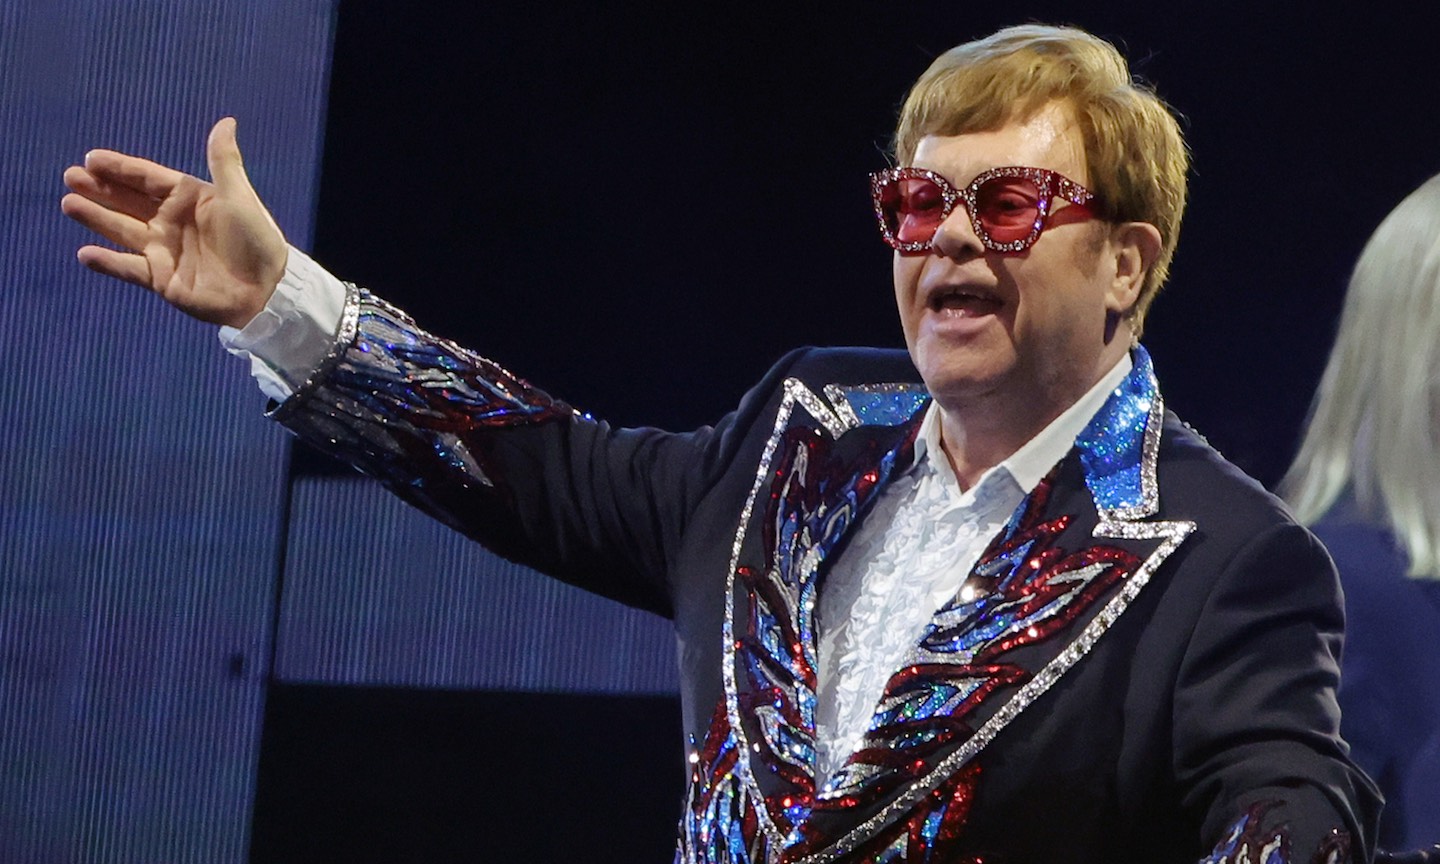 Elton John Enters Roblox to go 'Beyond the Yellow Brick Road